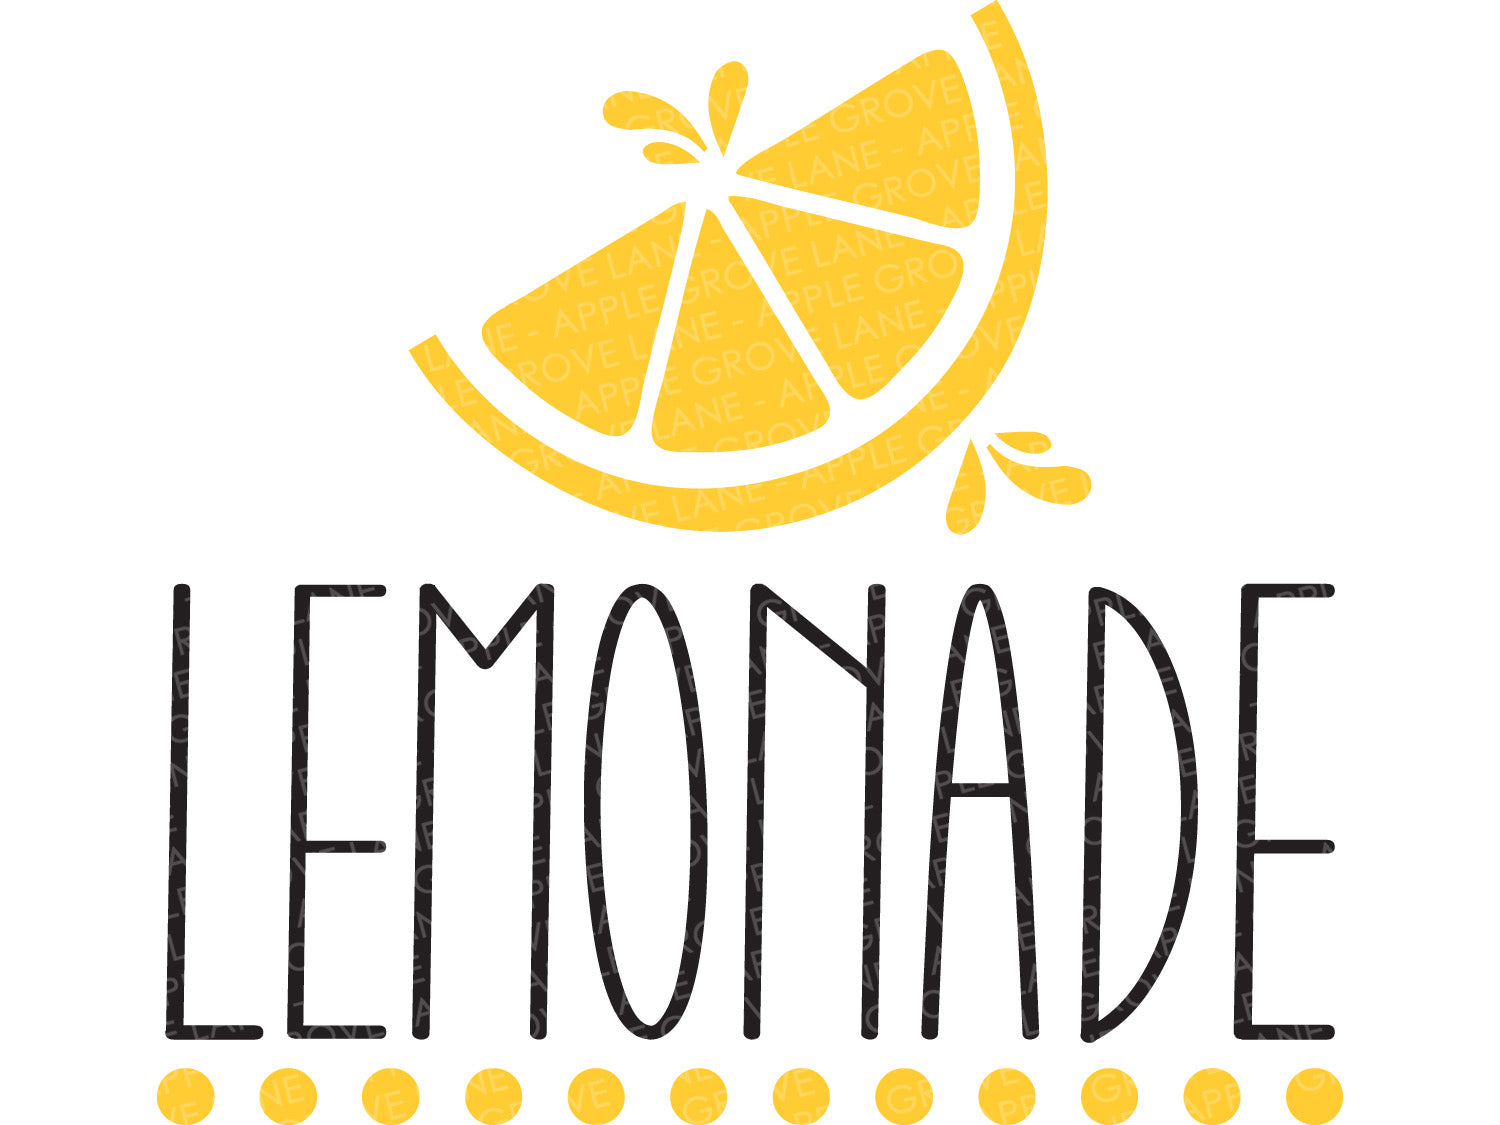 Lemonade Svg - Lemons Svg - Lemonade Sign - Lemon Svg - Lemonade Stand Svg - Lemonade Png - Lemonade Shirt Svg - Lemon Png - Kids Lemonade